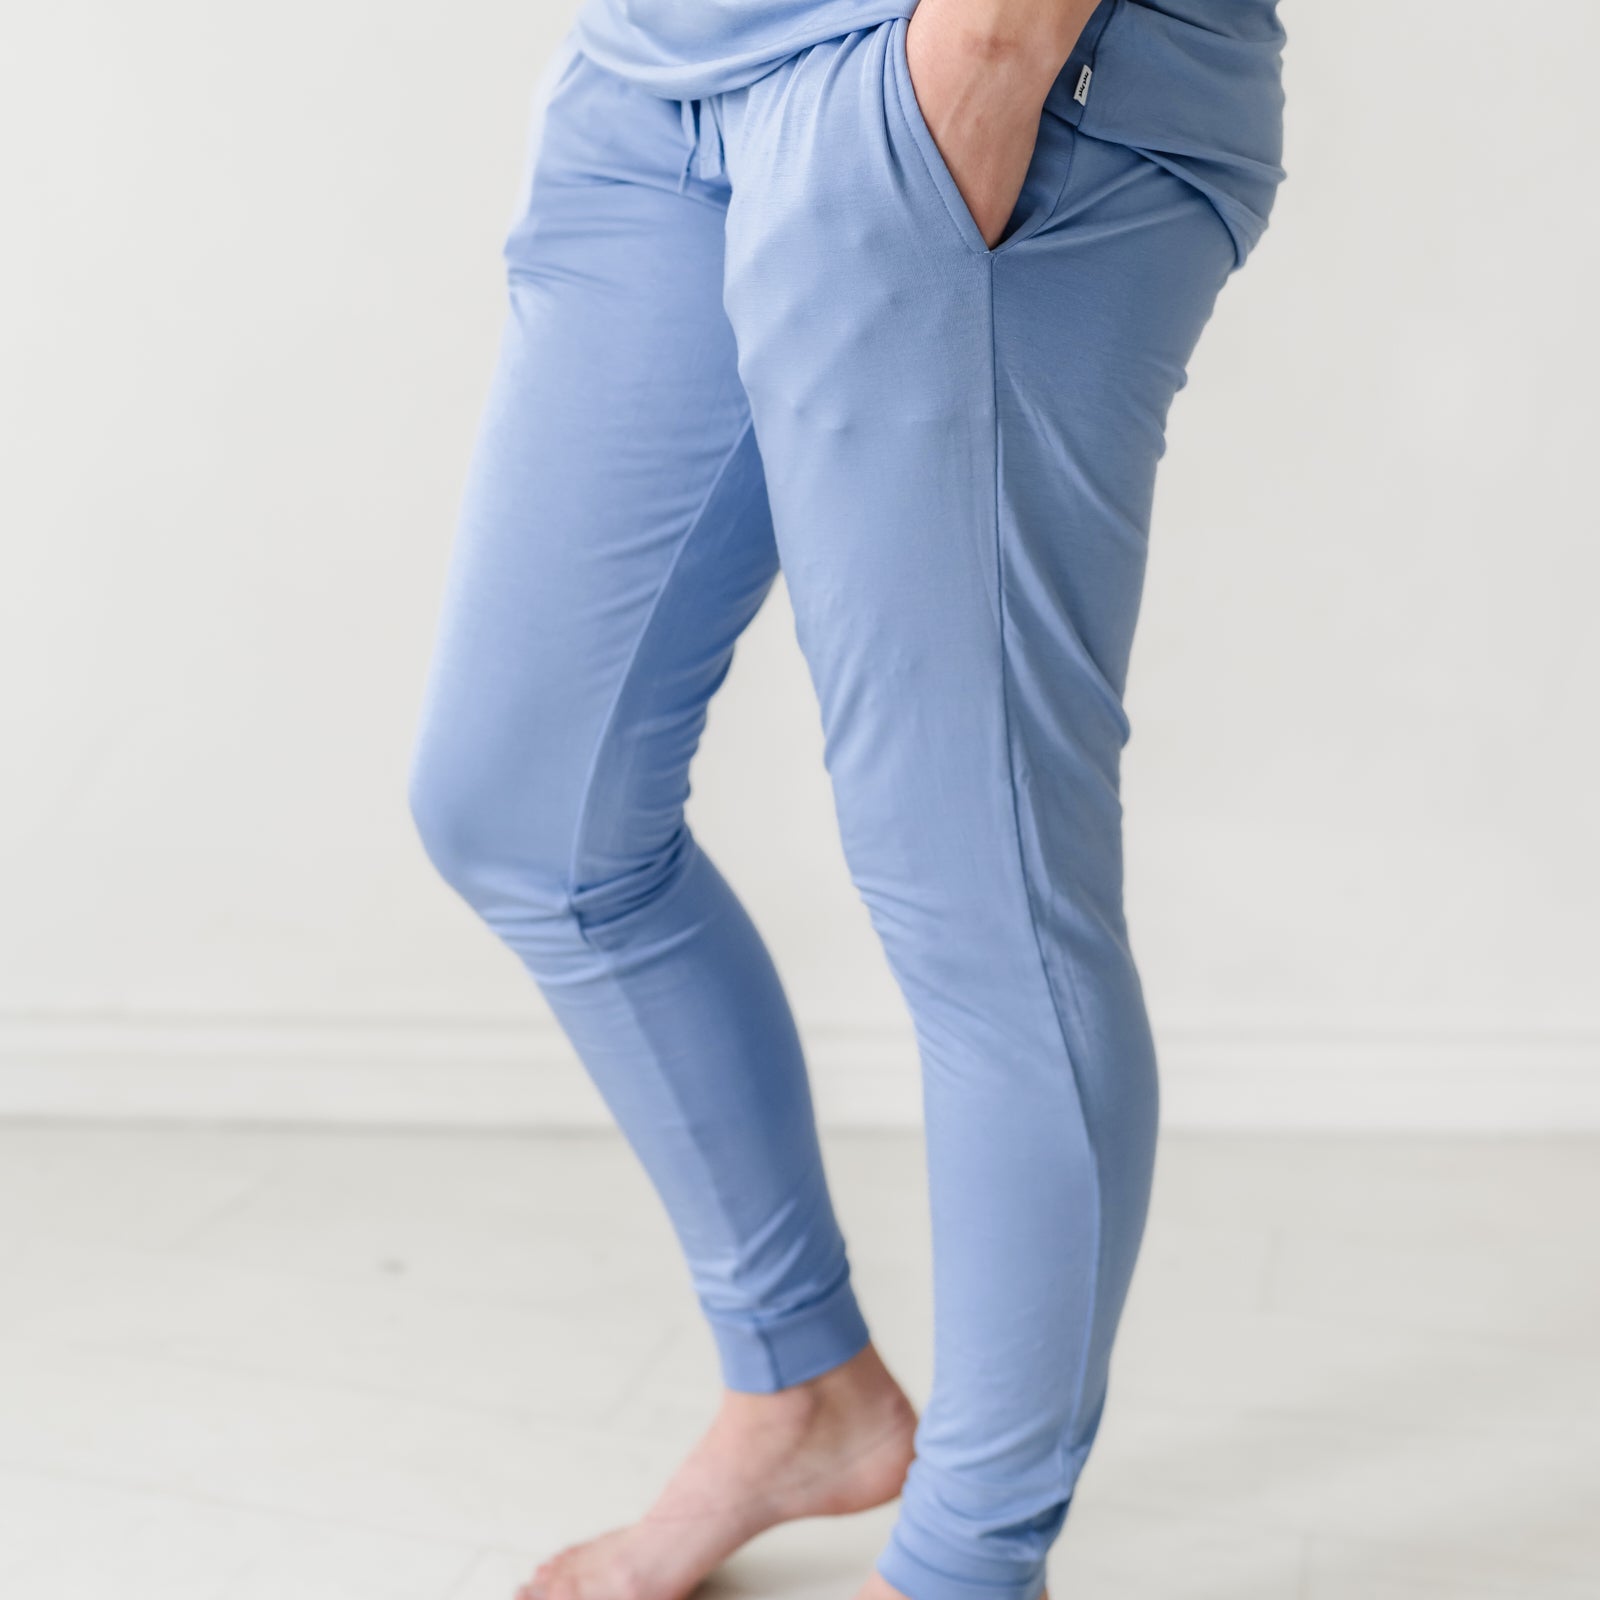 Profile image of a woman wearing Slate Blue women's pj pants